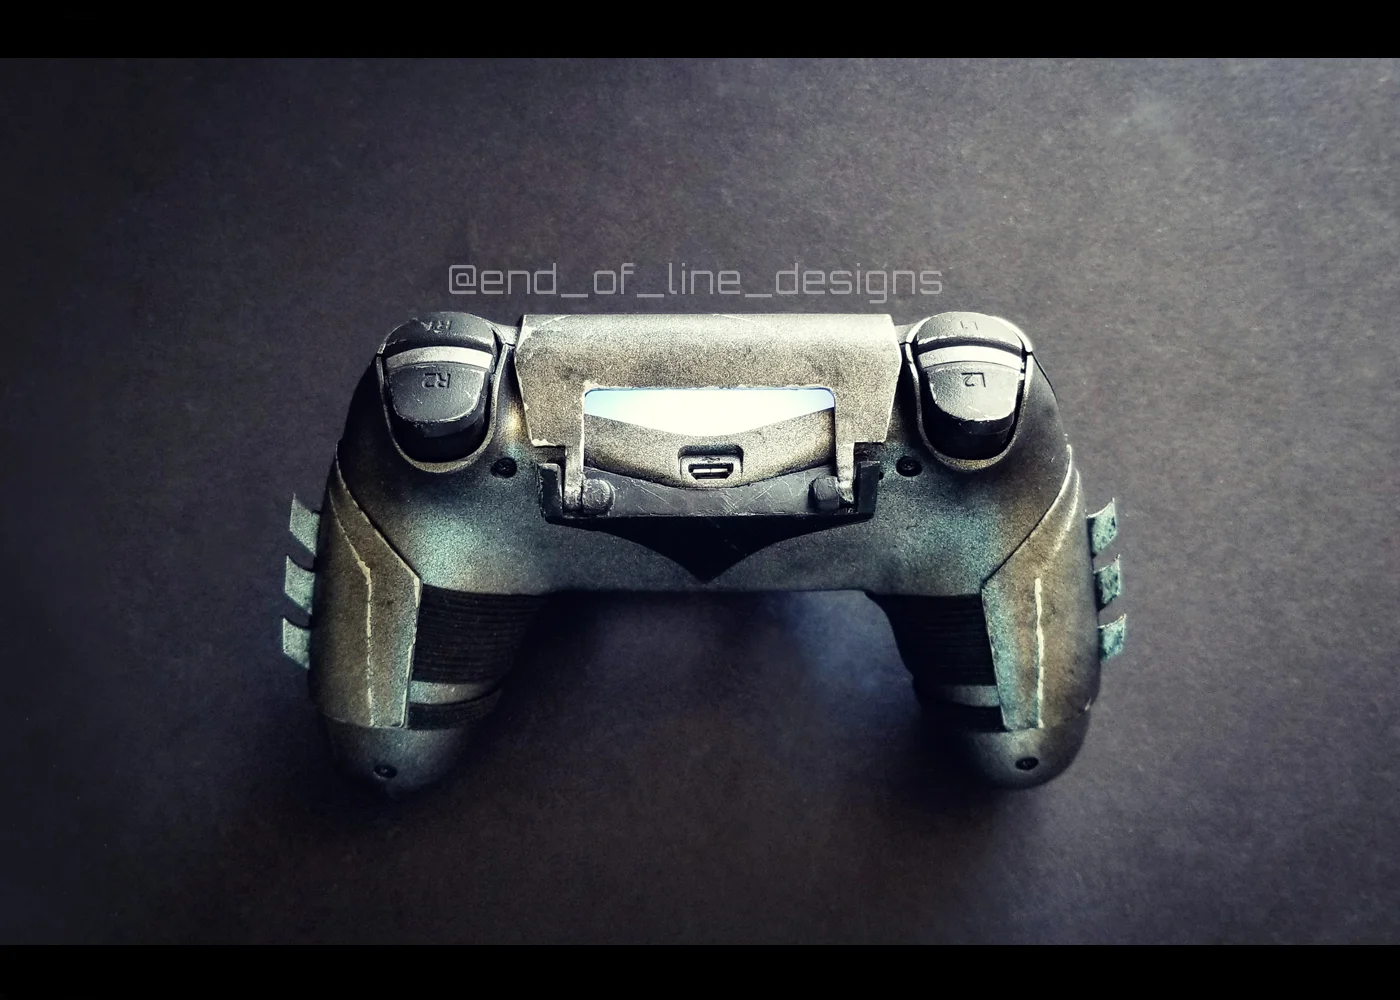 Взгляните на потрясающий контроллер для PS4 в стиле Бэтмена, сделанный вручную - фото 2